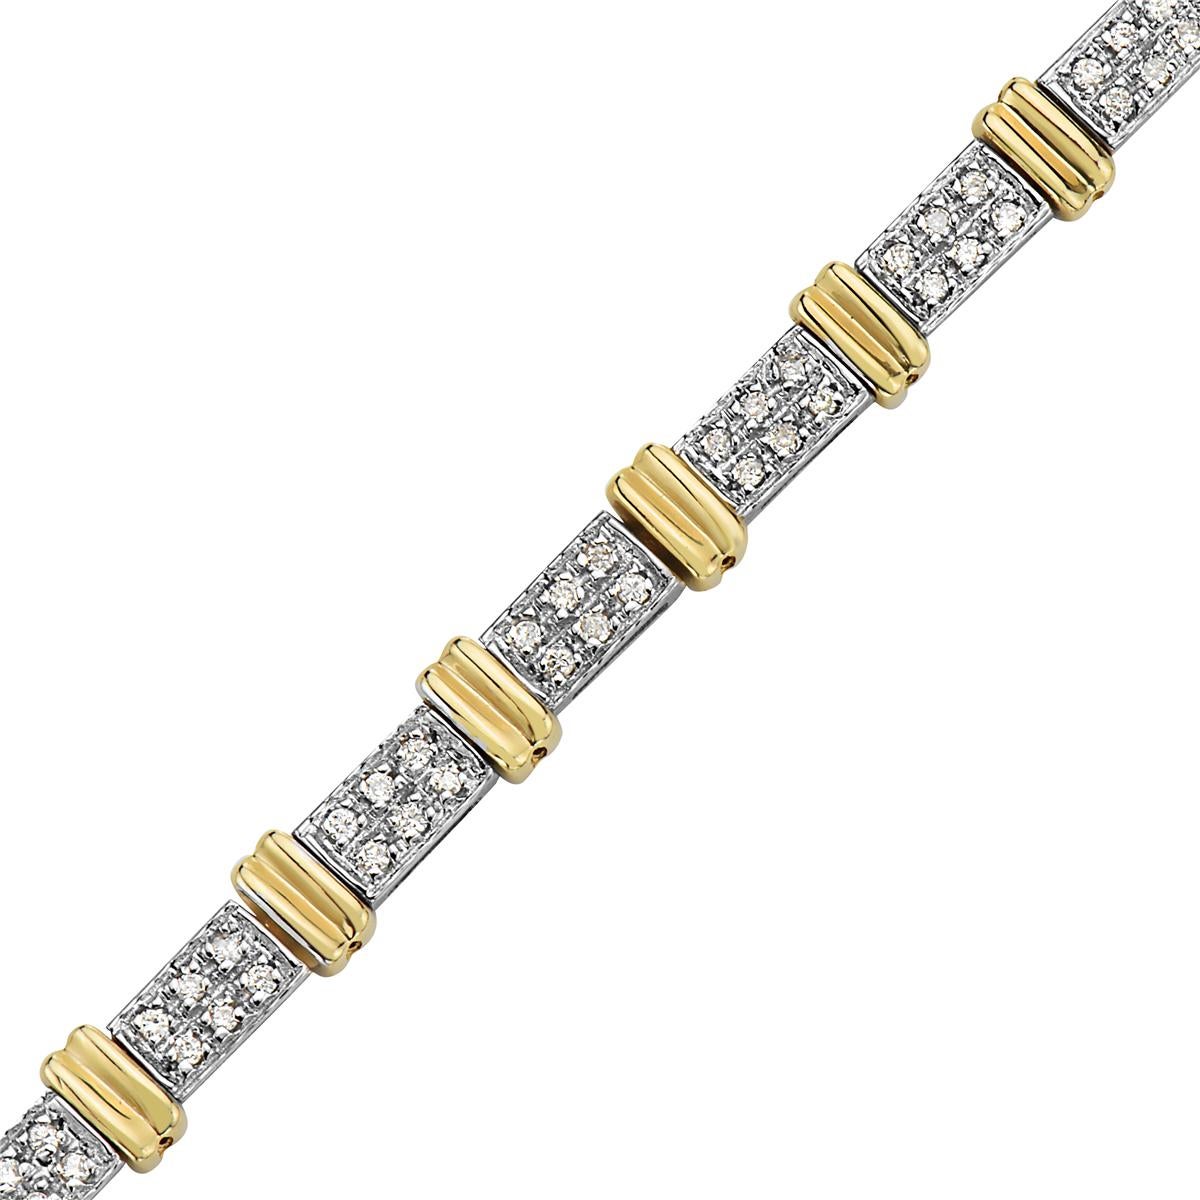 Ce bracelet présente un carat de diamants sertis dans de l'or jaune 14K. 7.longueur de 5 pouces. poids total de 17 grammes. 


Visites disponibles dans notre salle d'exposition à New York sur rendez-vous.